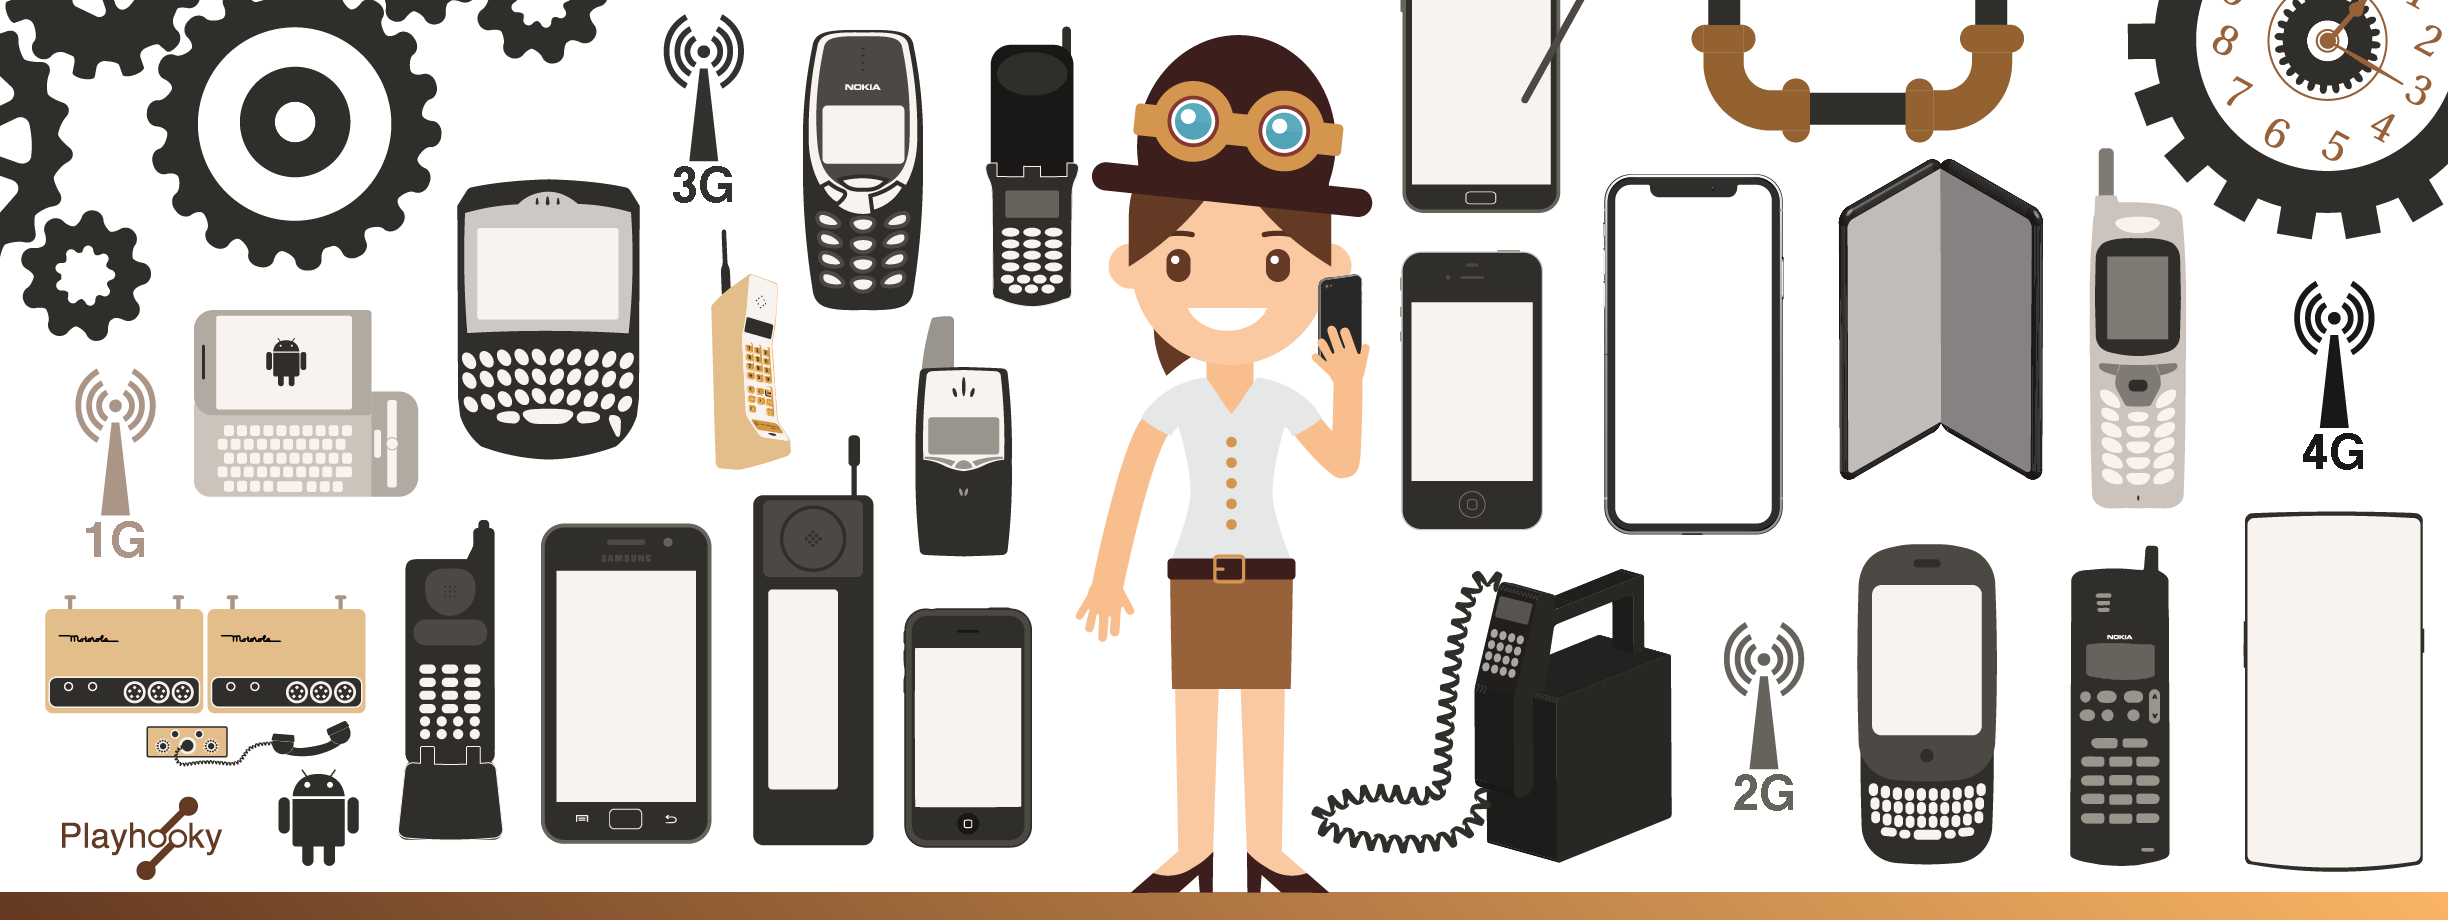 50 ans du téléphone portable : son évolution en 10 dates